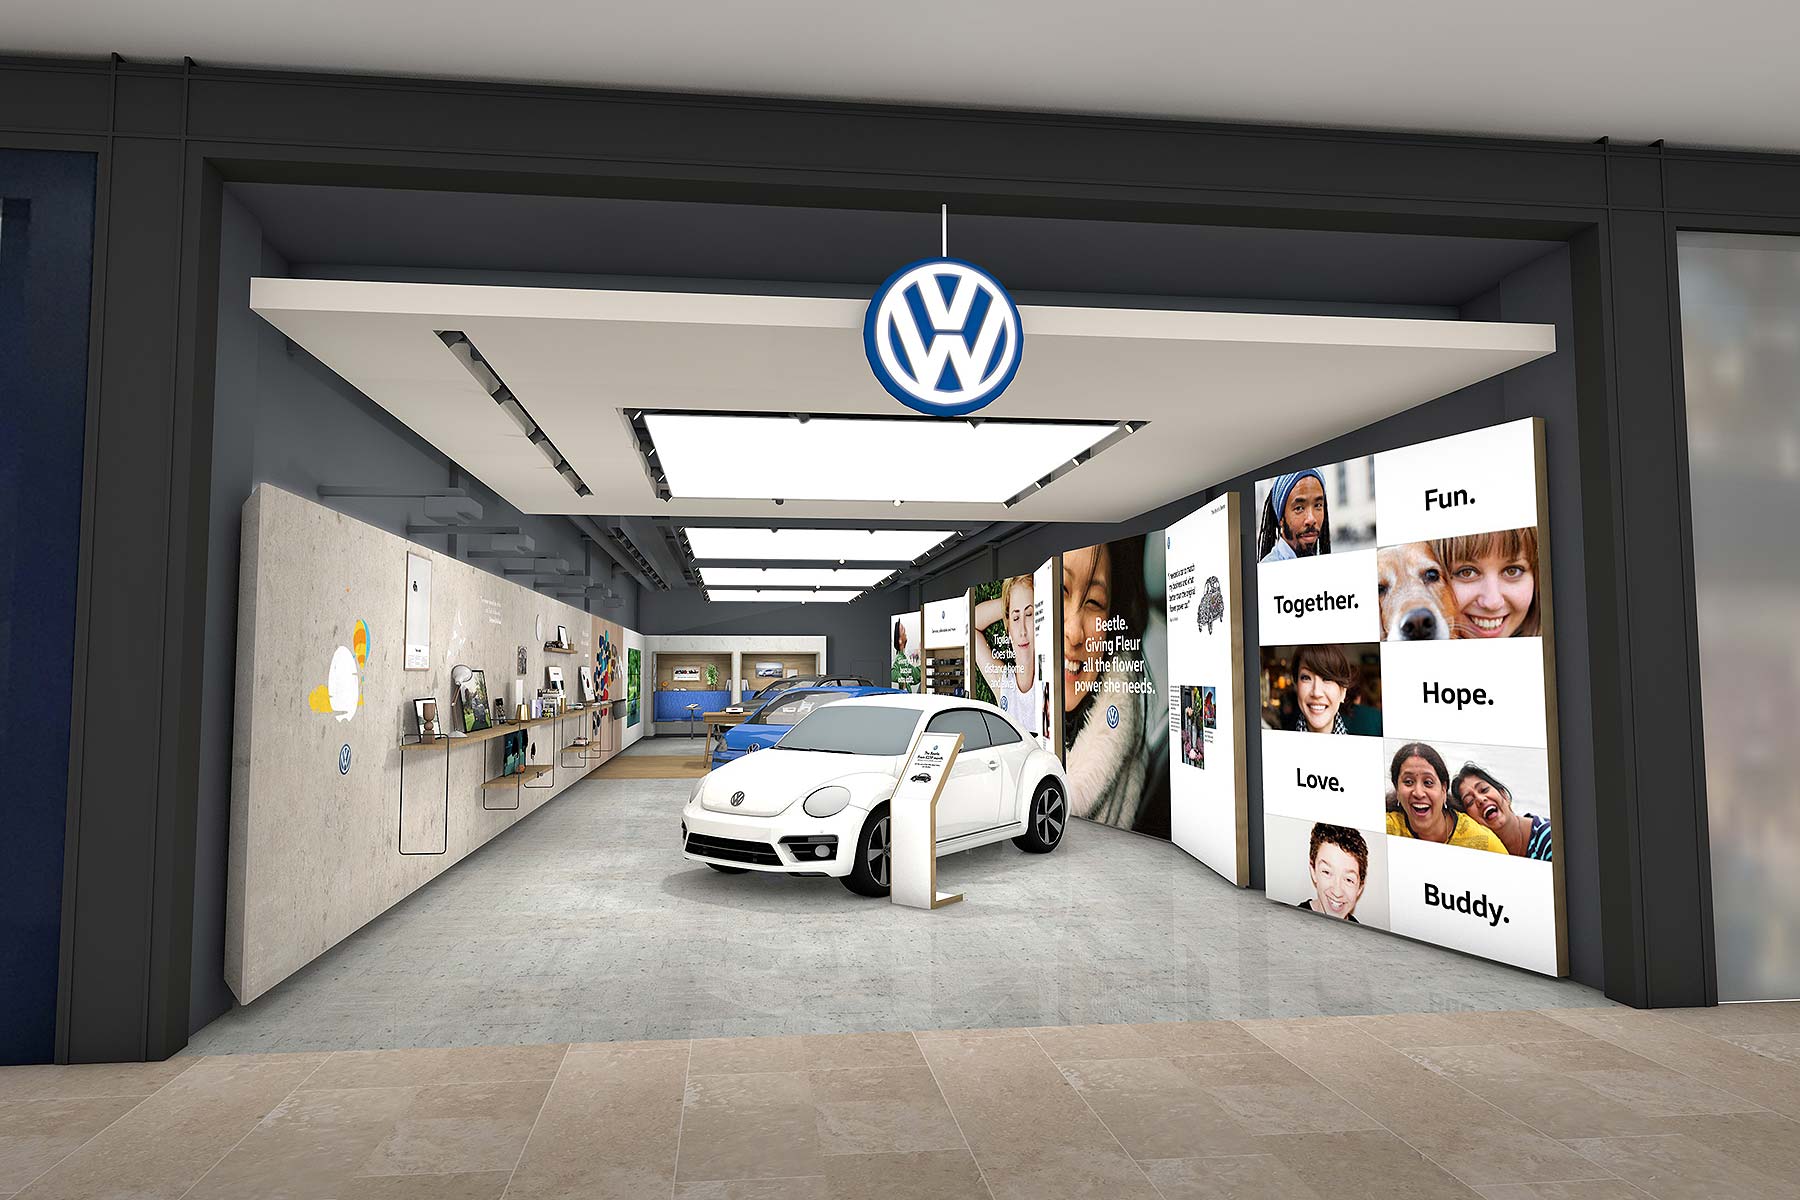 Магазин volkswagen. Volkswagen Showroom. Автомобильные шоу-румы в торговых центрах. Автомобиль в торговом центре. Экспонирование автомобиля.